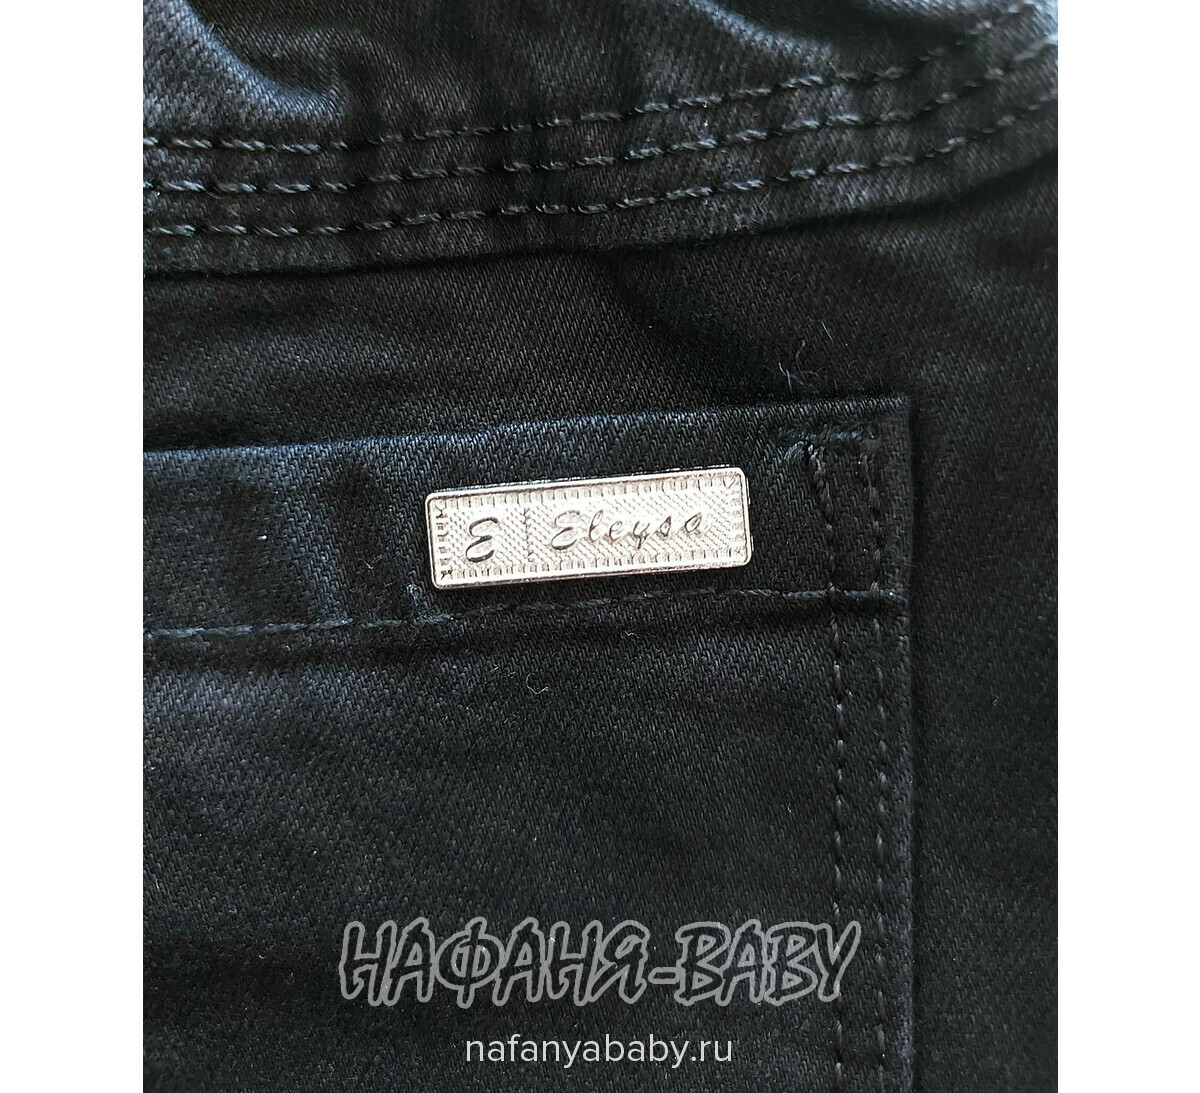 Джинсы детские ELEYSA Jeans арт: 6135, 3-7 лет, цвет черный, оптом Турция